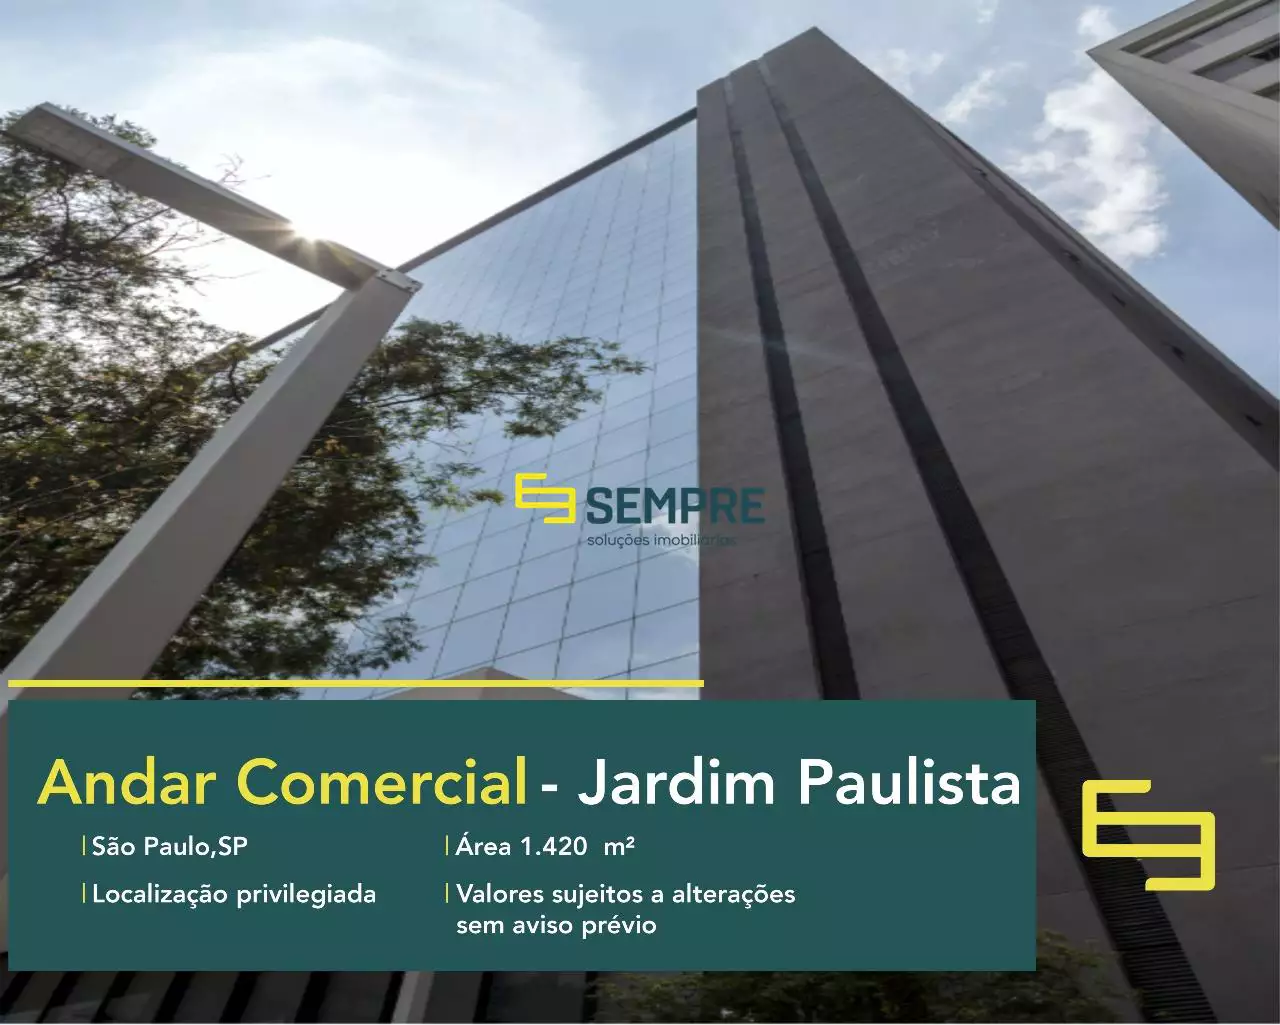 Andar comercial na Faria Lima para locação em São Paulo, em excelente localização. O ponto comercial conta com área de 1.420 m².